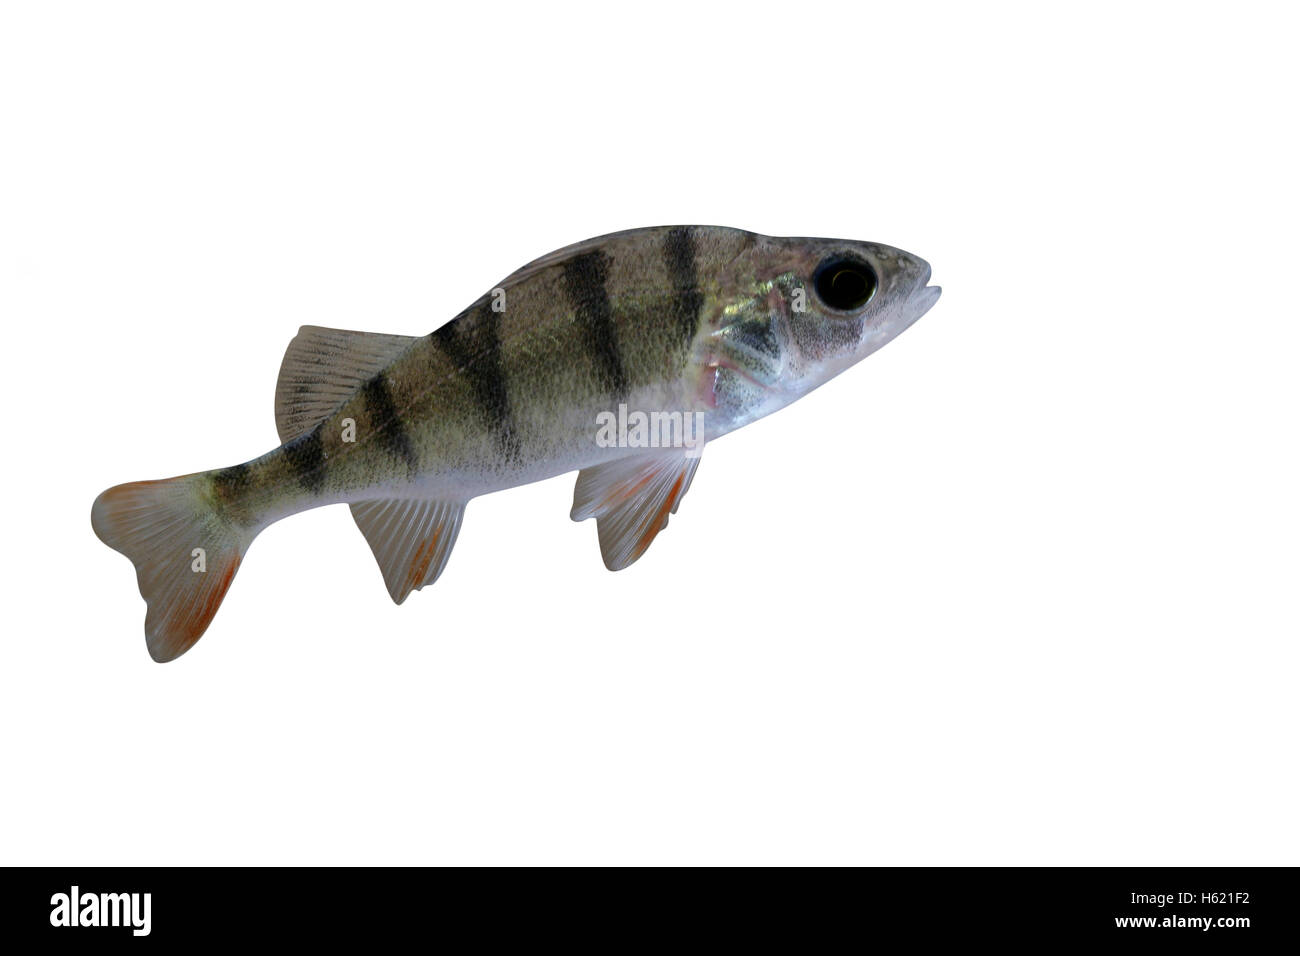 La perche, Perca fluviatilis, seul poisson dans l'eau Banque D'Images